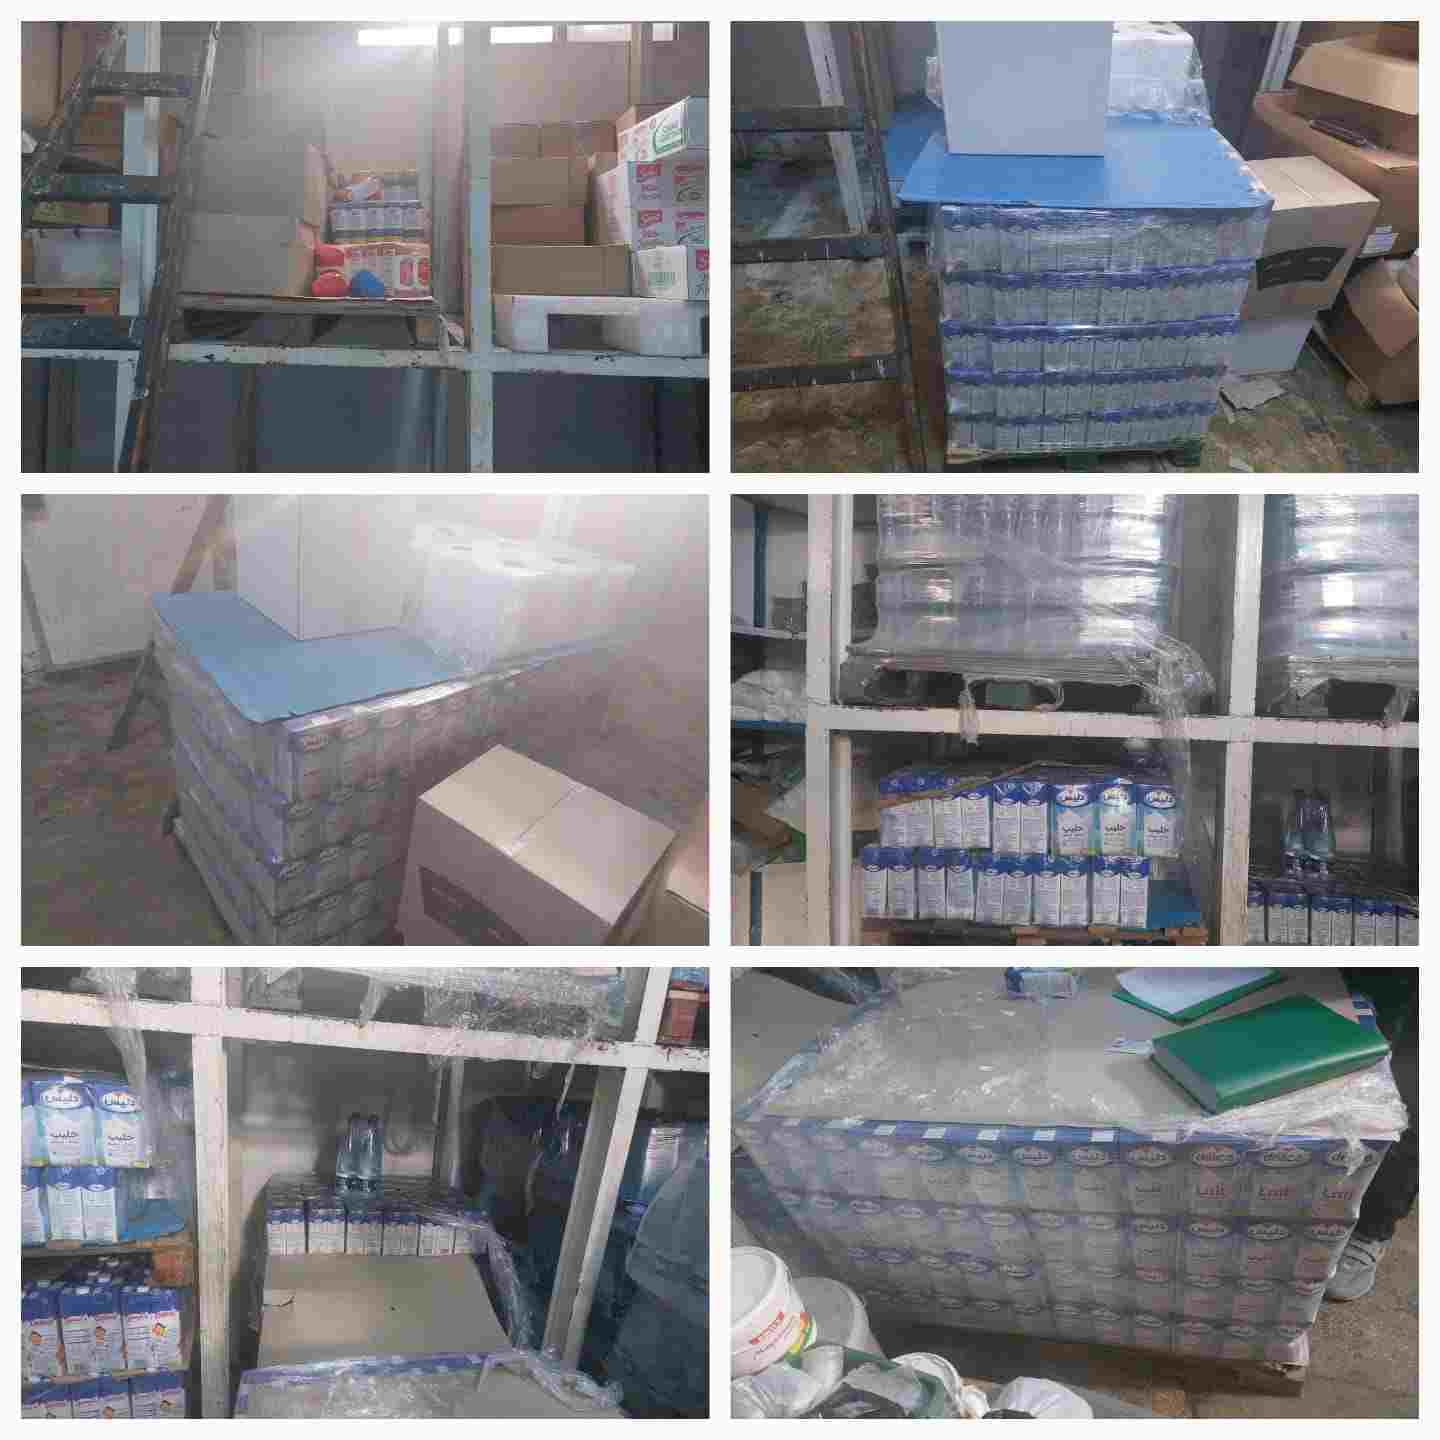 Tunis : Saisie de 2142 litres de lait dans un entrepôt anarchique (Photos)